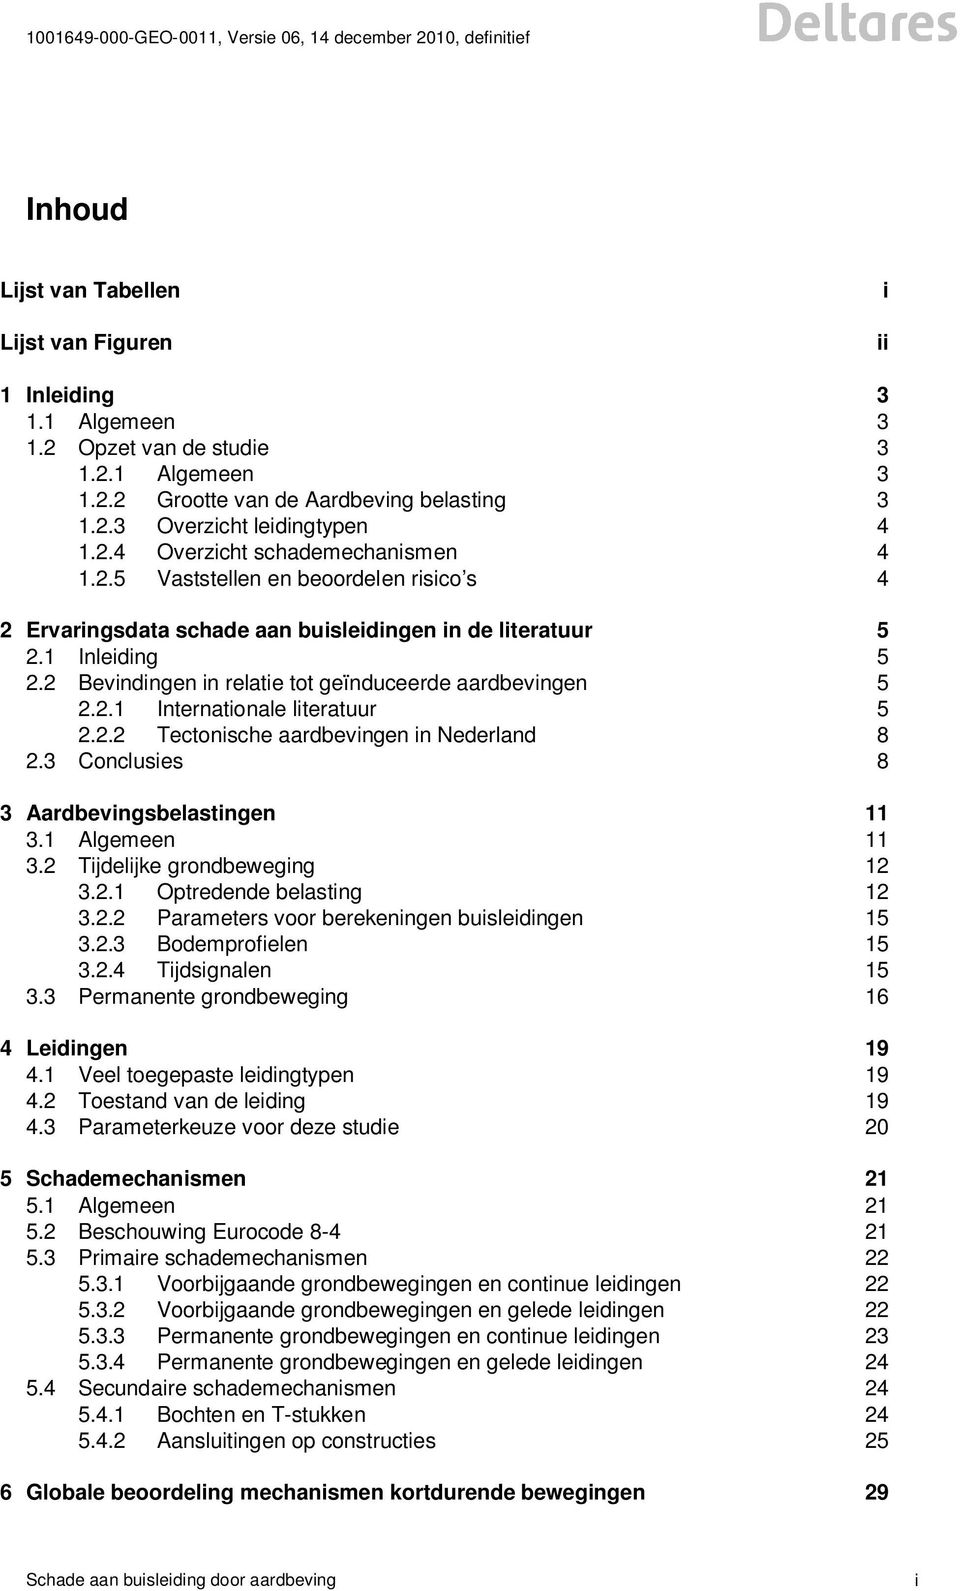 2.2 Tectonische aardbevingen in Nederland 8 2.3 Conclusies 8 3 Aardbevingsbelastingen 11 3.1 Algemeen 11 3.2 Tijdelijke grondbeweging 12 3.2.1 Optredende belasting 12 3.2.2 Parameters voor berekeningen buisleidingen 15 3.